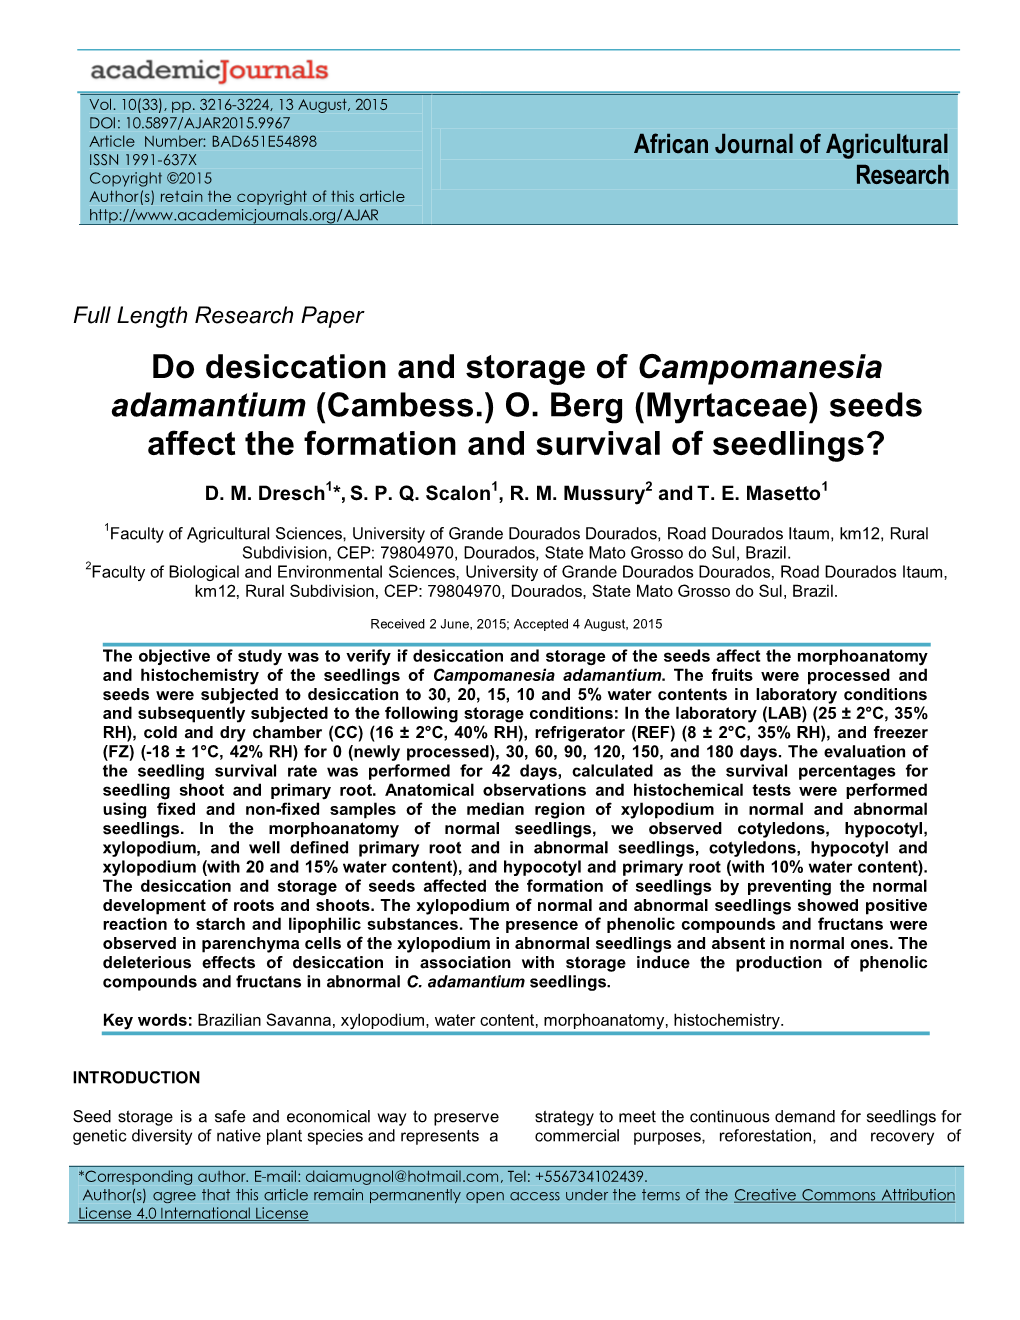 Do Desiccation and Storage of Campomanesia Adamantium (Cambess.) O